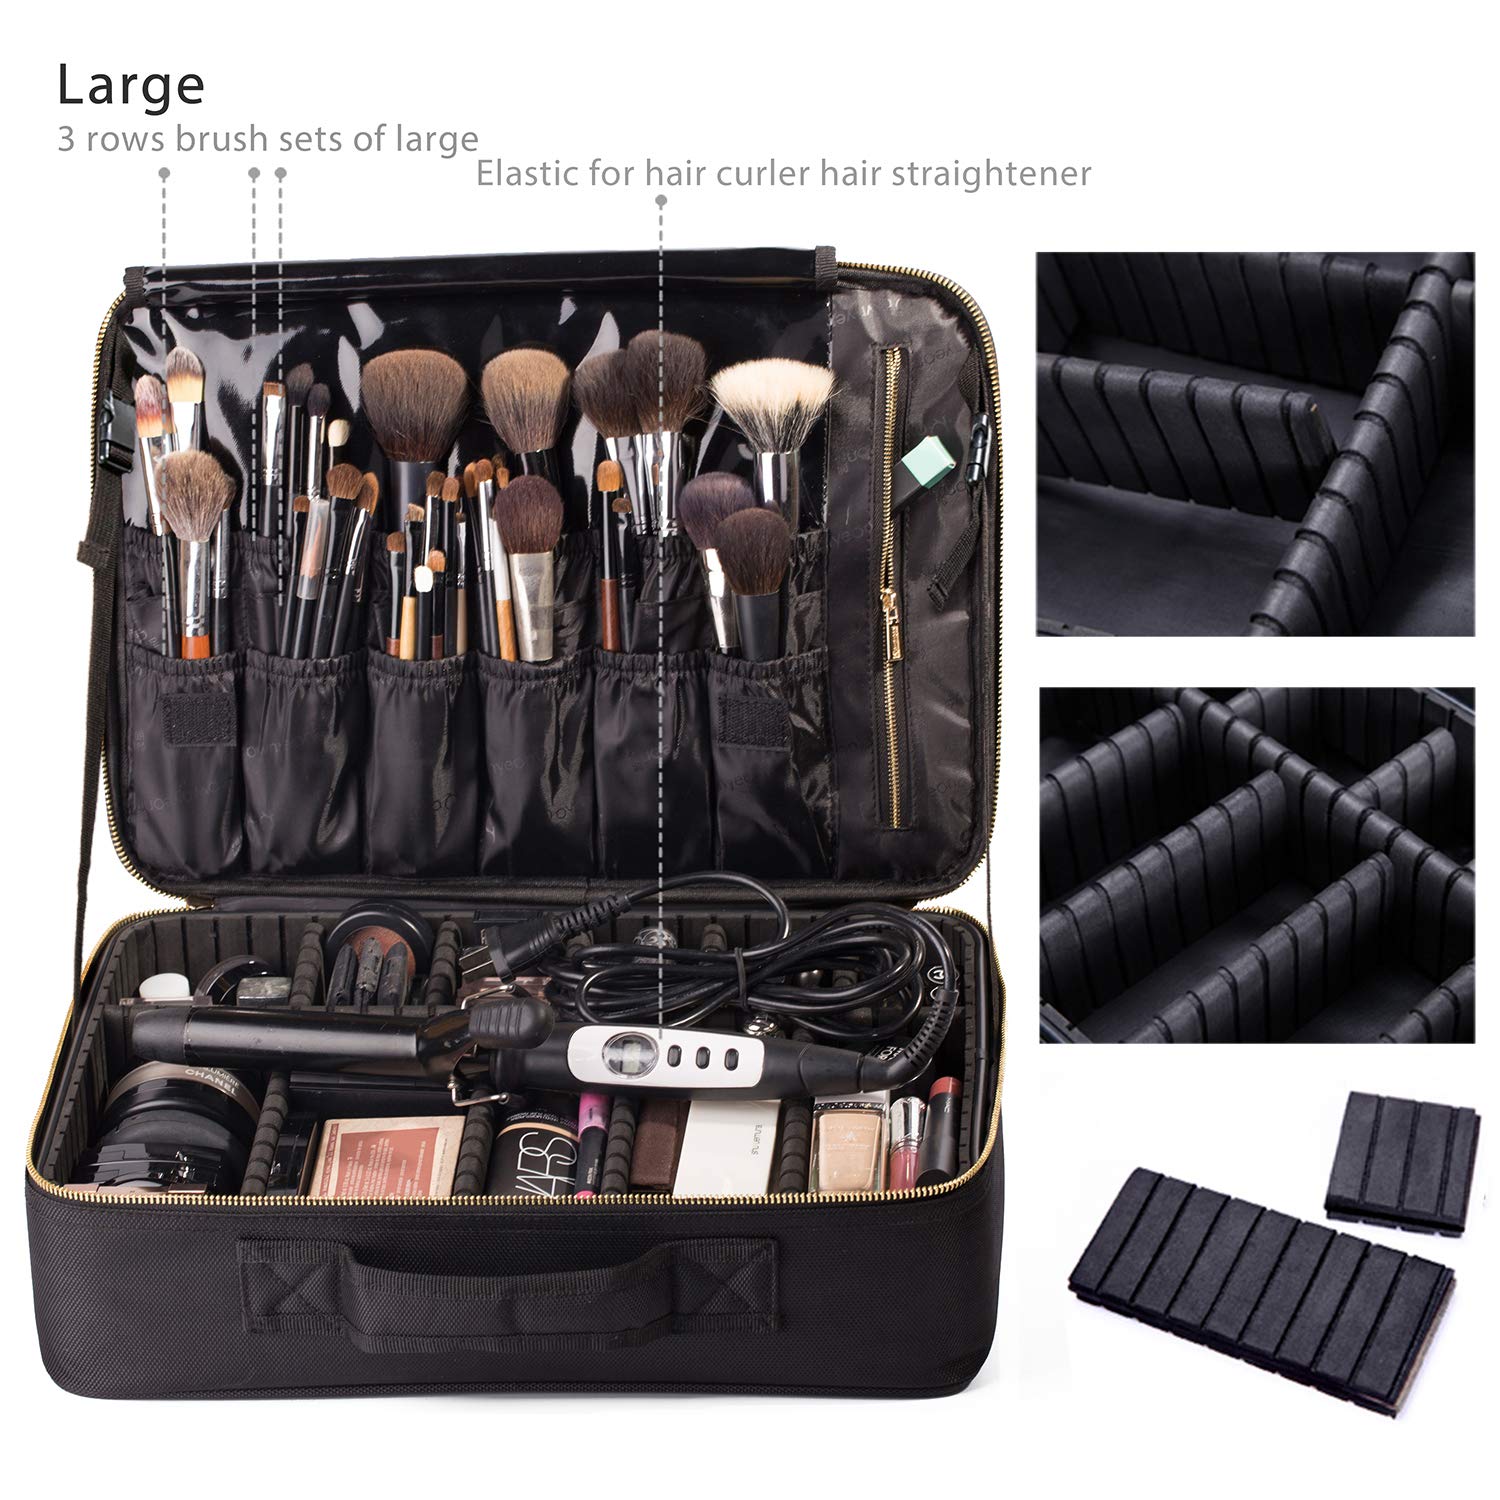 Portable Makeup Bag EVA Professional Makeup Artist Bag with Adjustable Divider